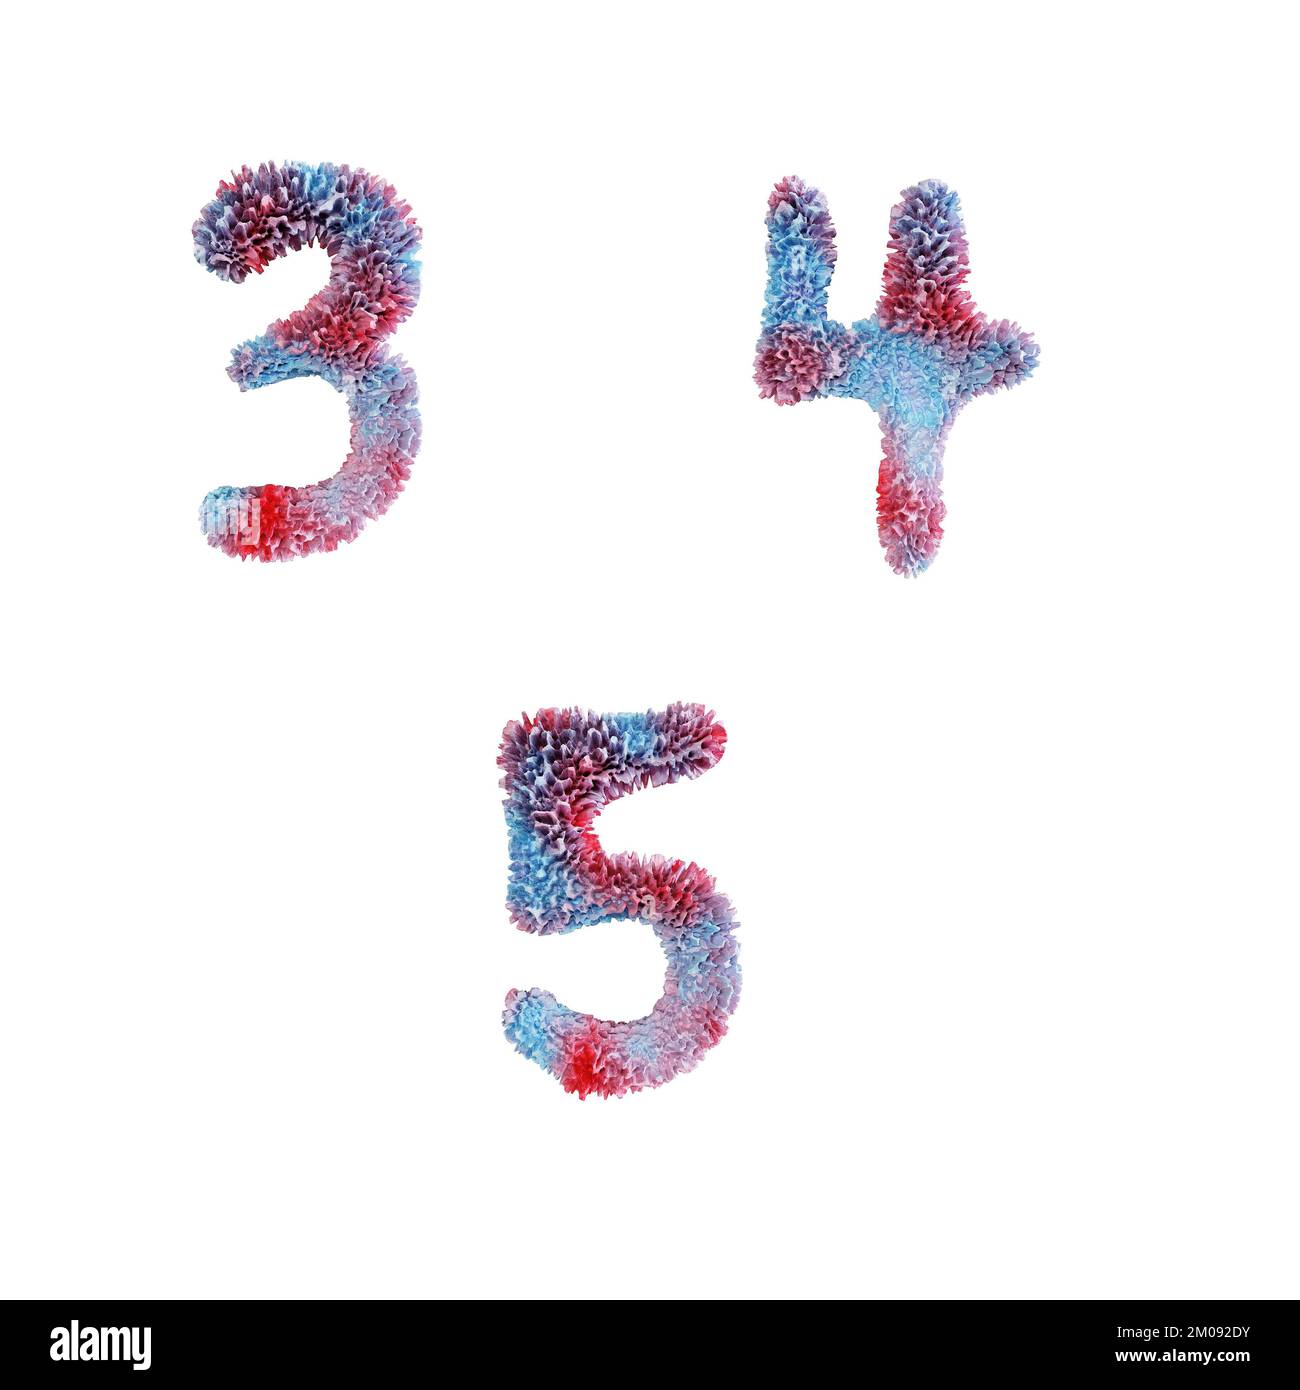 3D rappresentazione dell'alfabeto maiuscolo della barriera corallina - cifre 3-5 Foto Stock